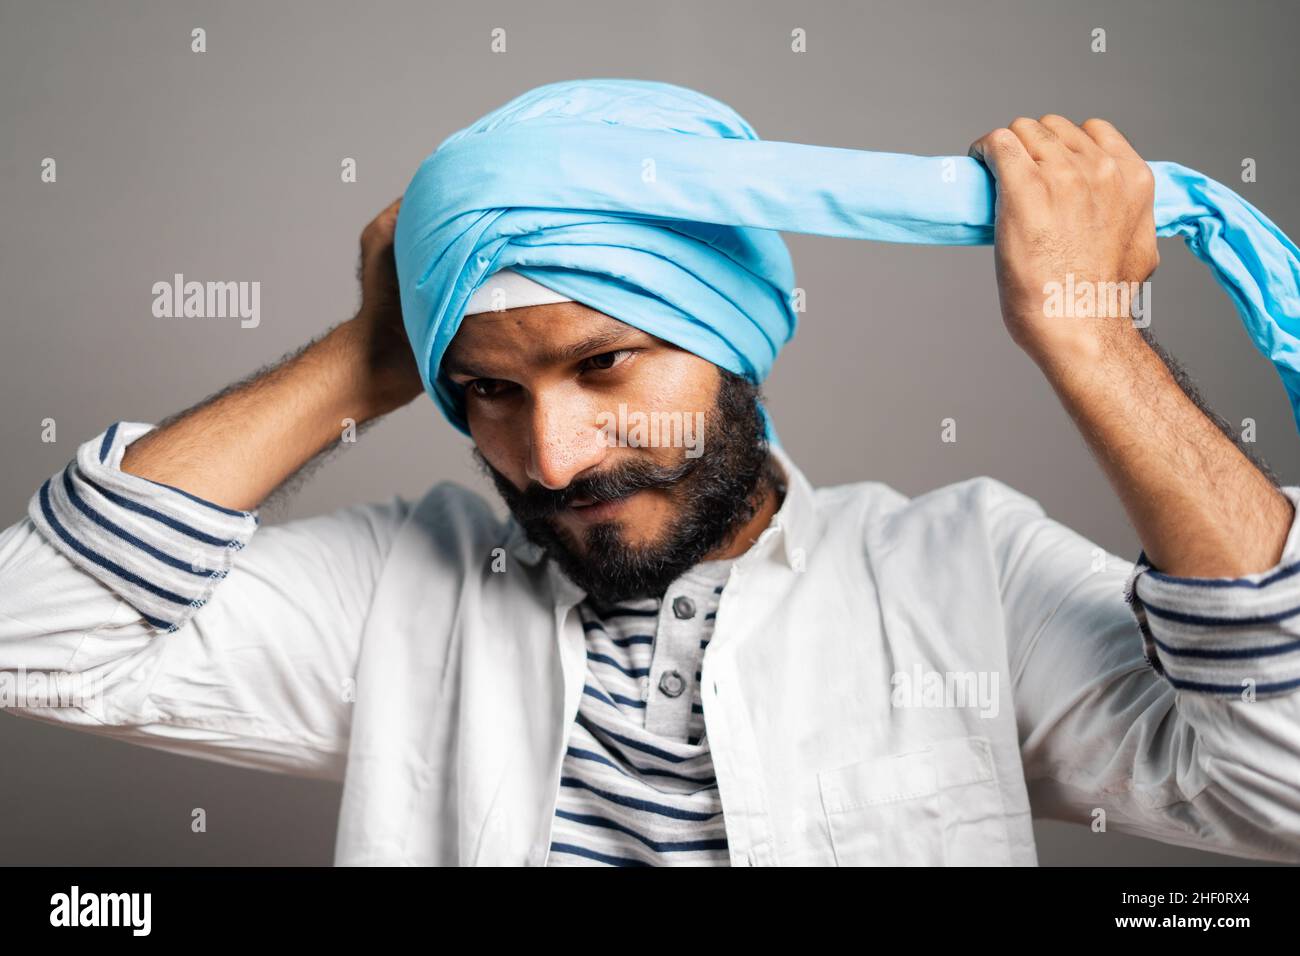 Hombres con turbante india fotografías e imágenes de alta resolución -  Página 4 - Alamy